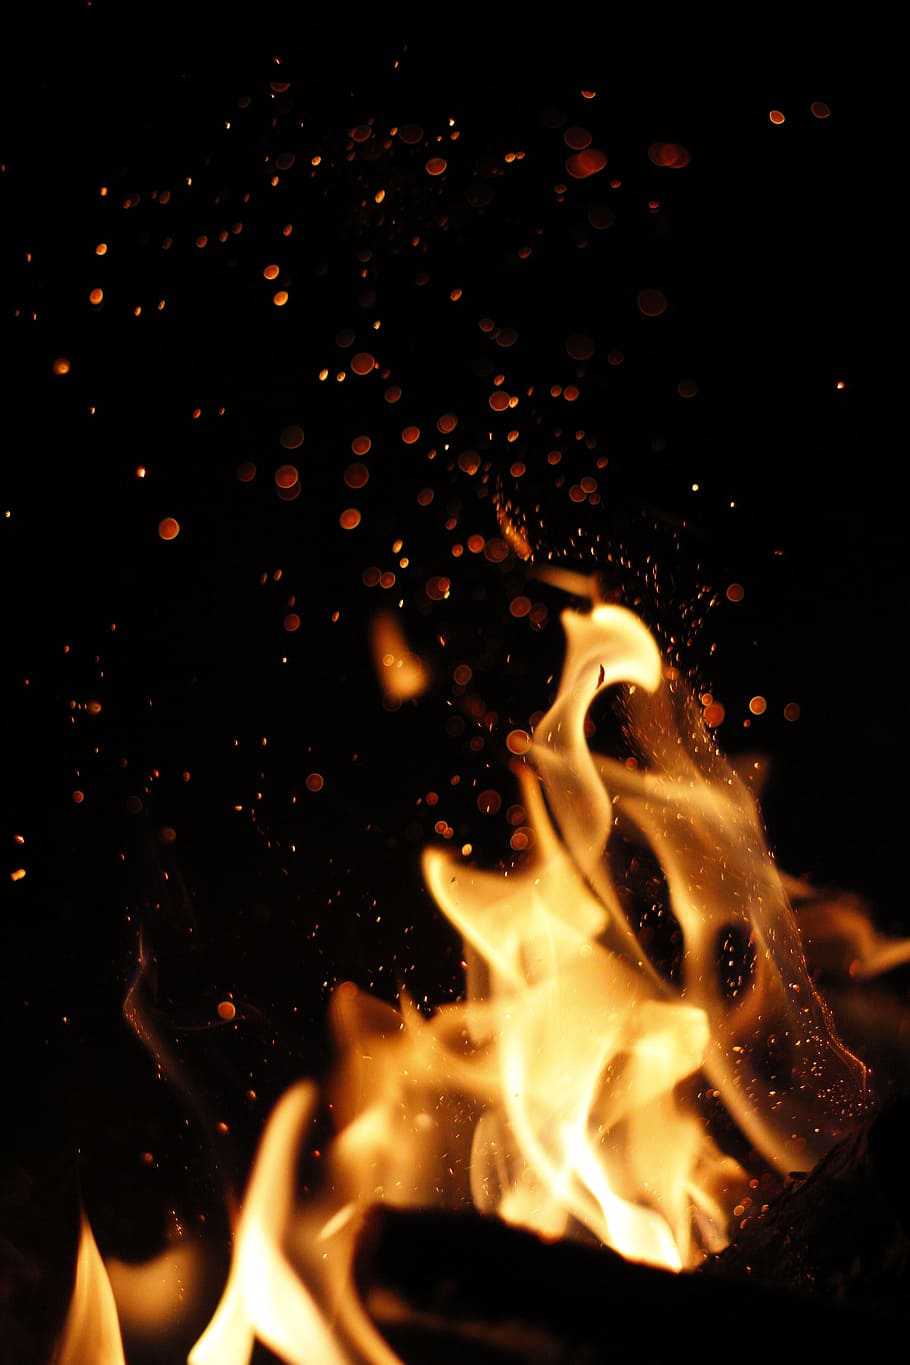 fuego, caliente, alta velocidad, llama, hoguera, resplandor, ardiente, ignición, llameante, energía